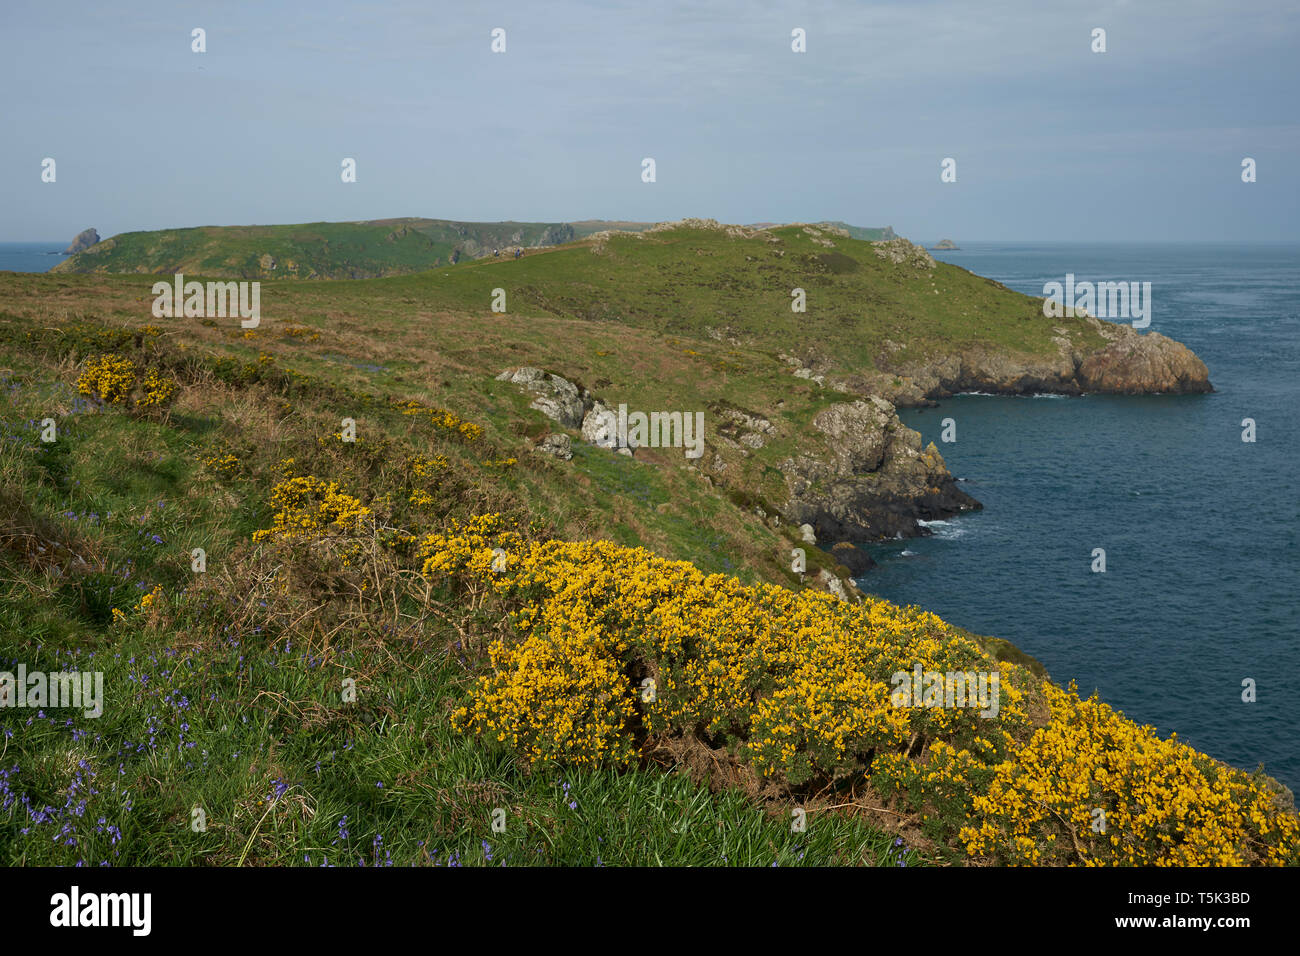 Frühling Blumen an der Küste von Pembrokeshire in Wales, Vereinigtes Königreich. Insel Skomer im Hintergrund. Stockfoto